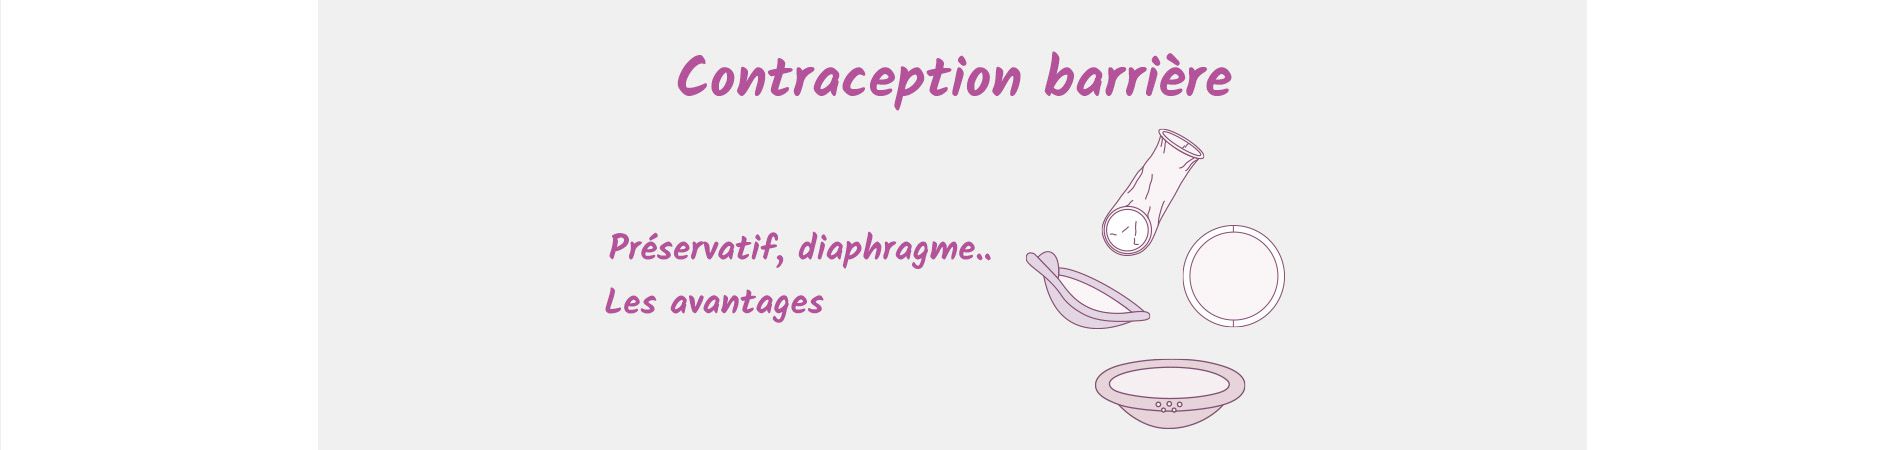 contraception mécanique